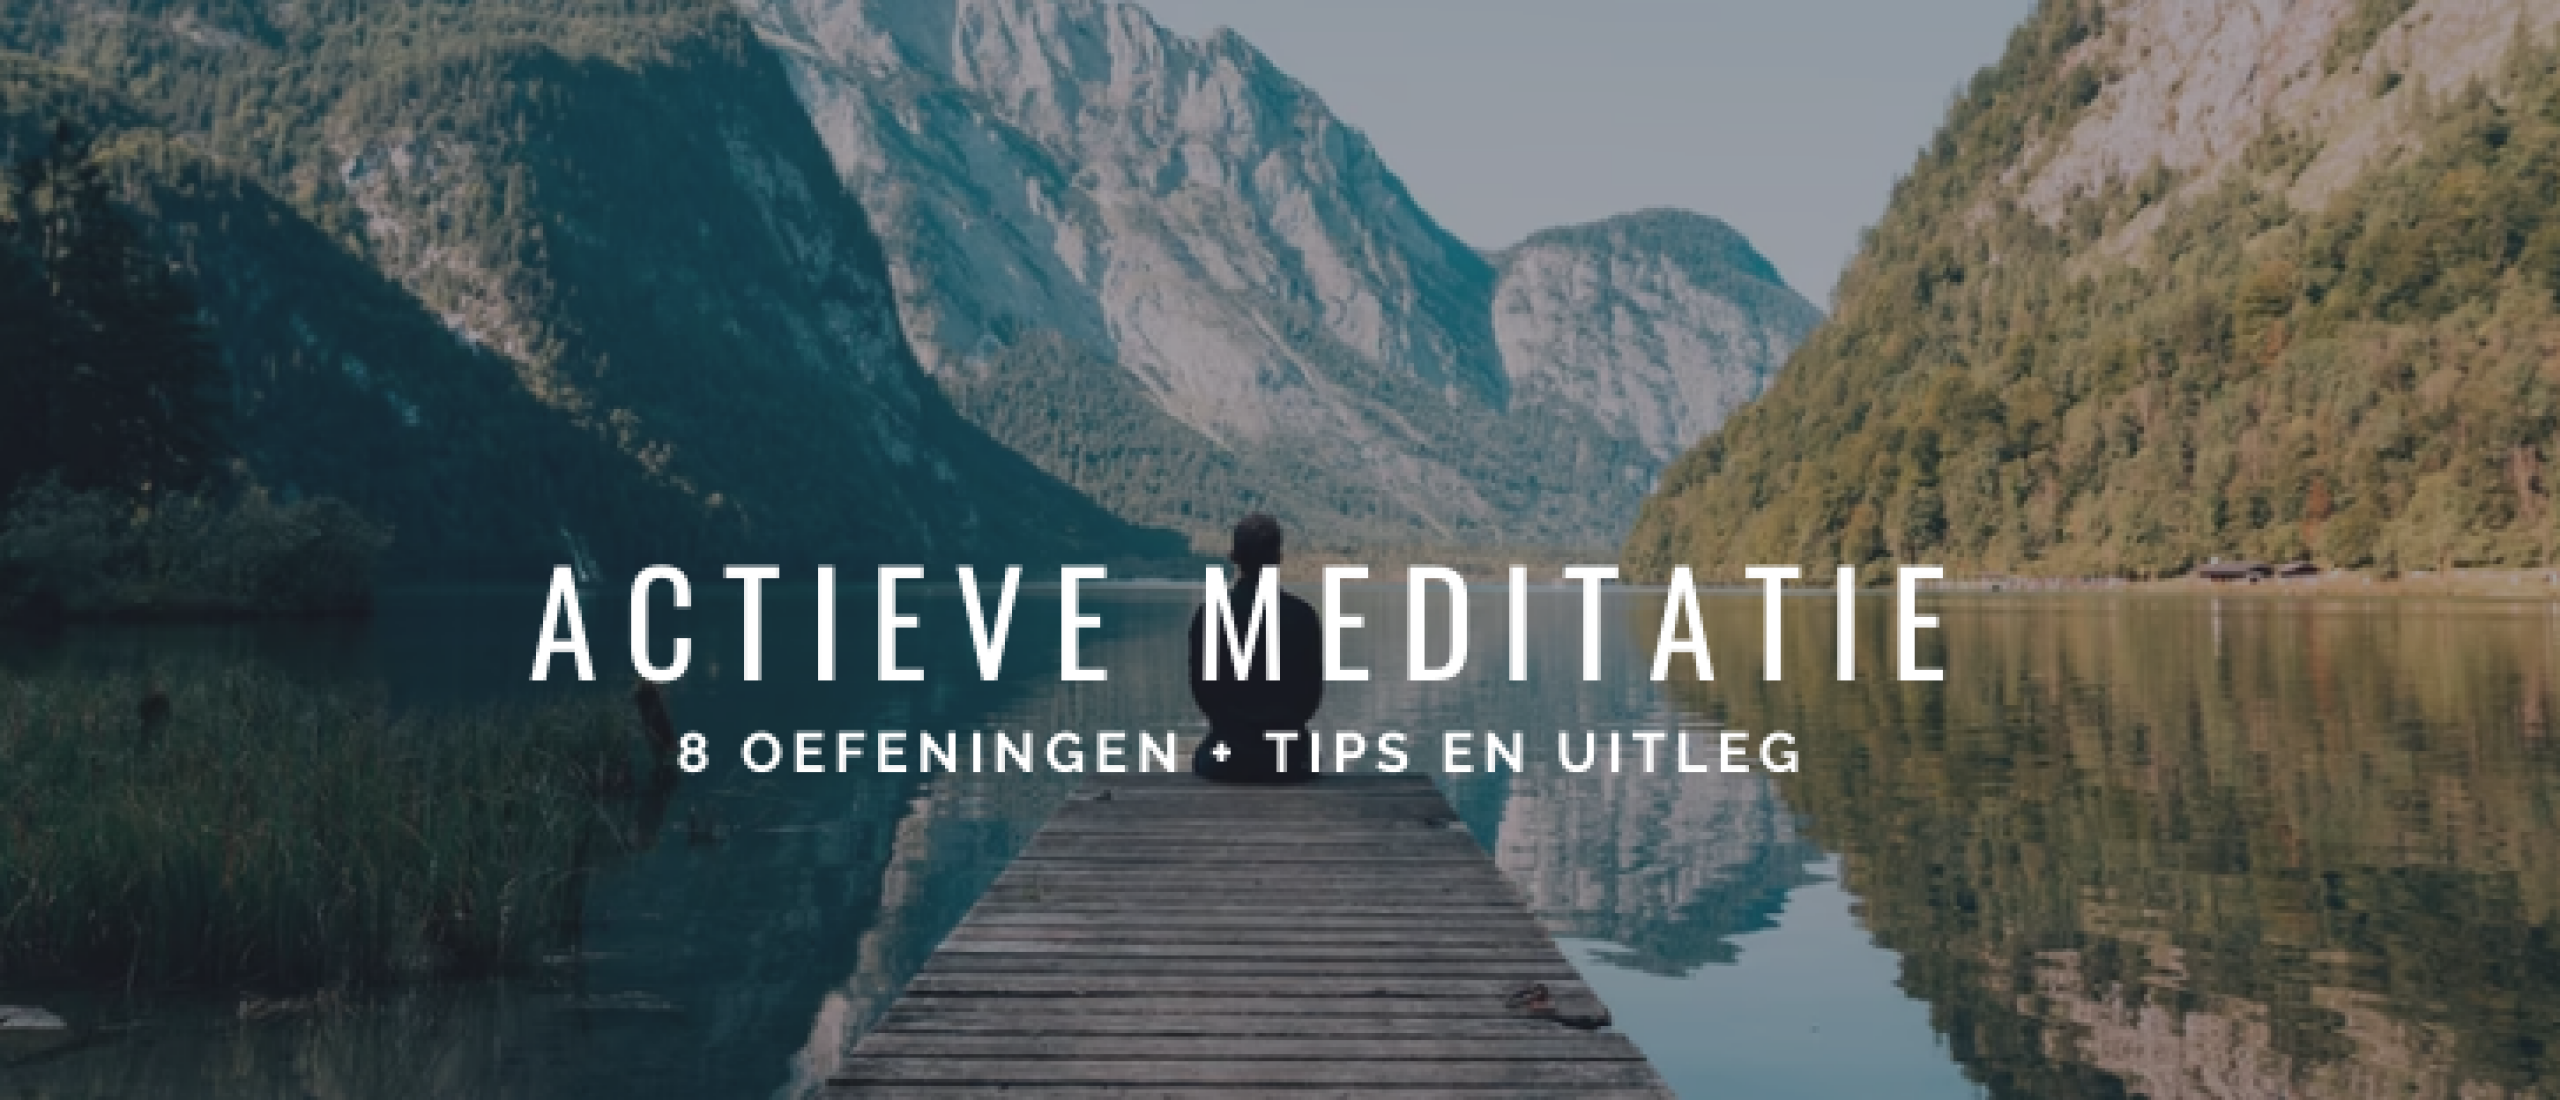 Actieve Meditatie: 8 Oefeningen + Tips en Voordelen